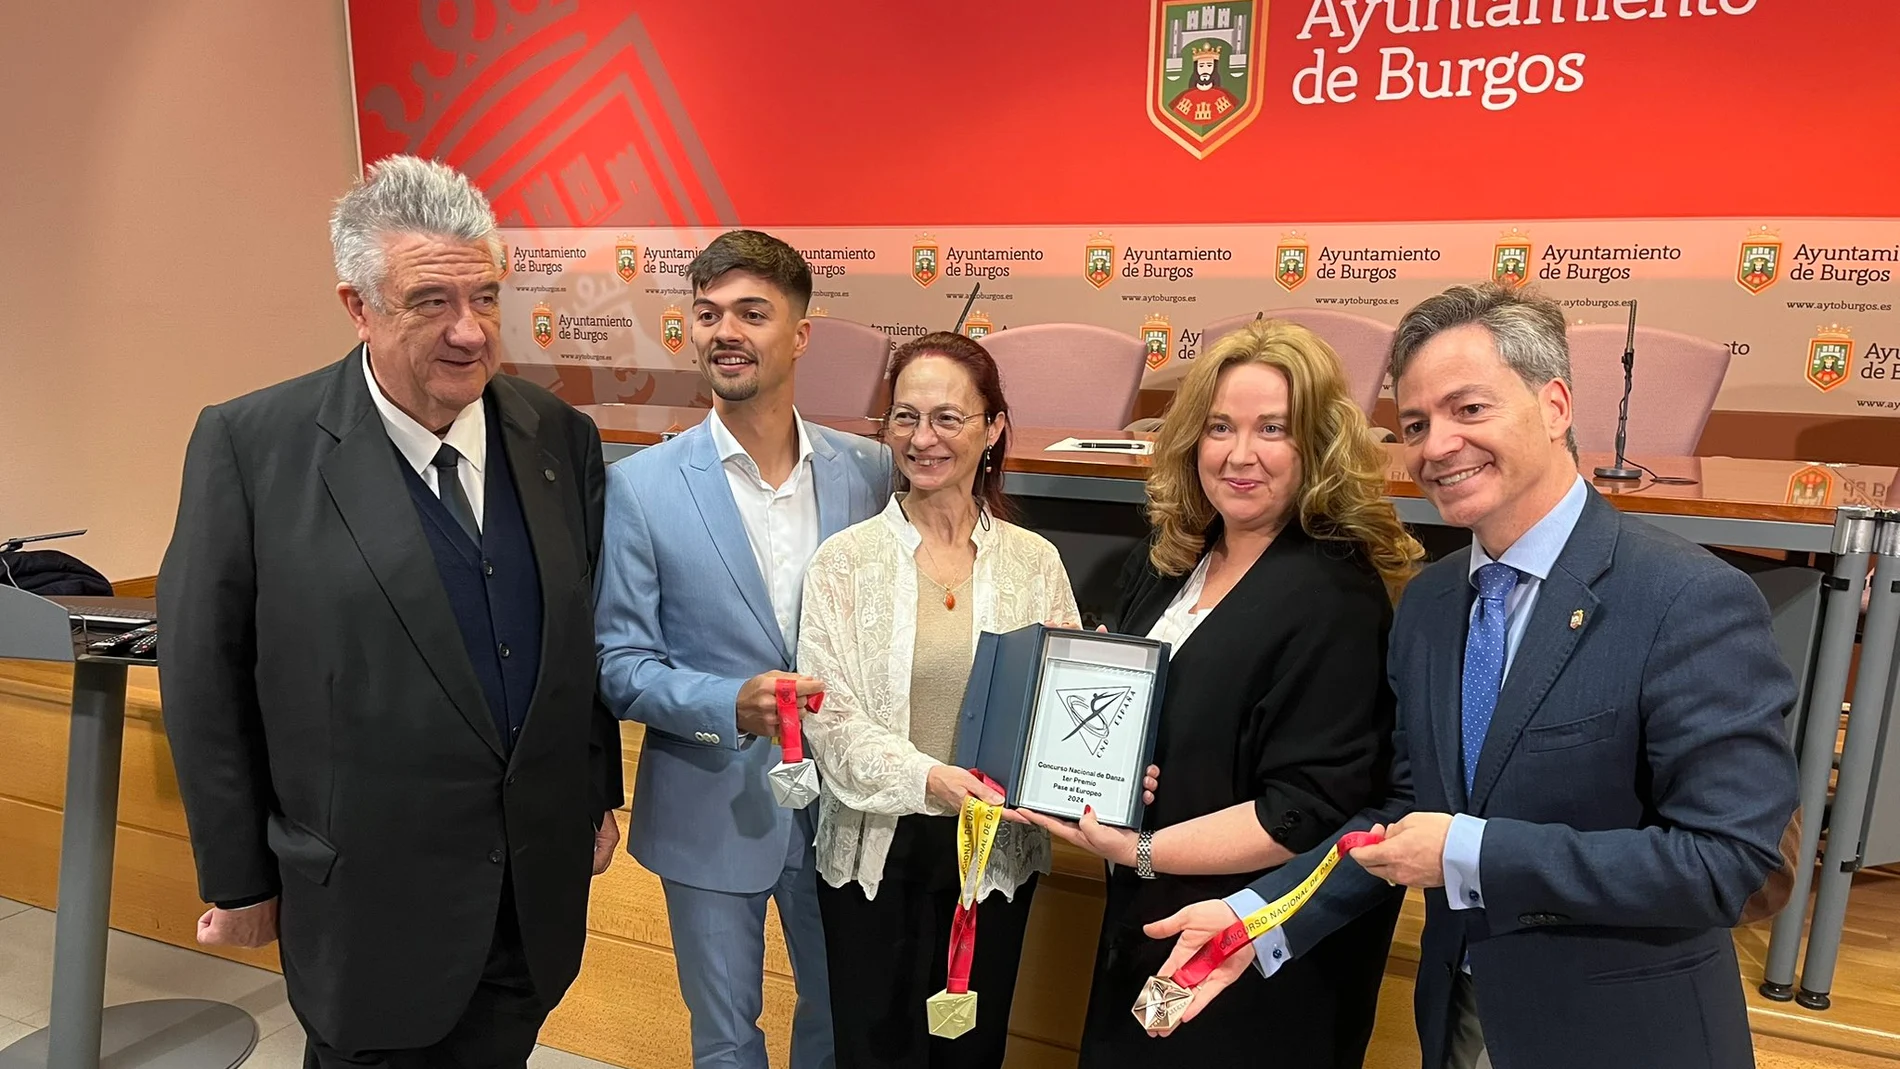 La alcaldesa de Burgos, Cristina Ayala, presenta el Concurso Nacional de Danza